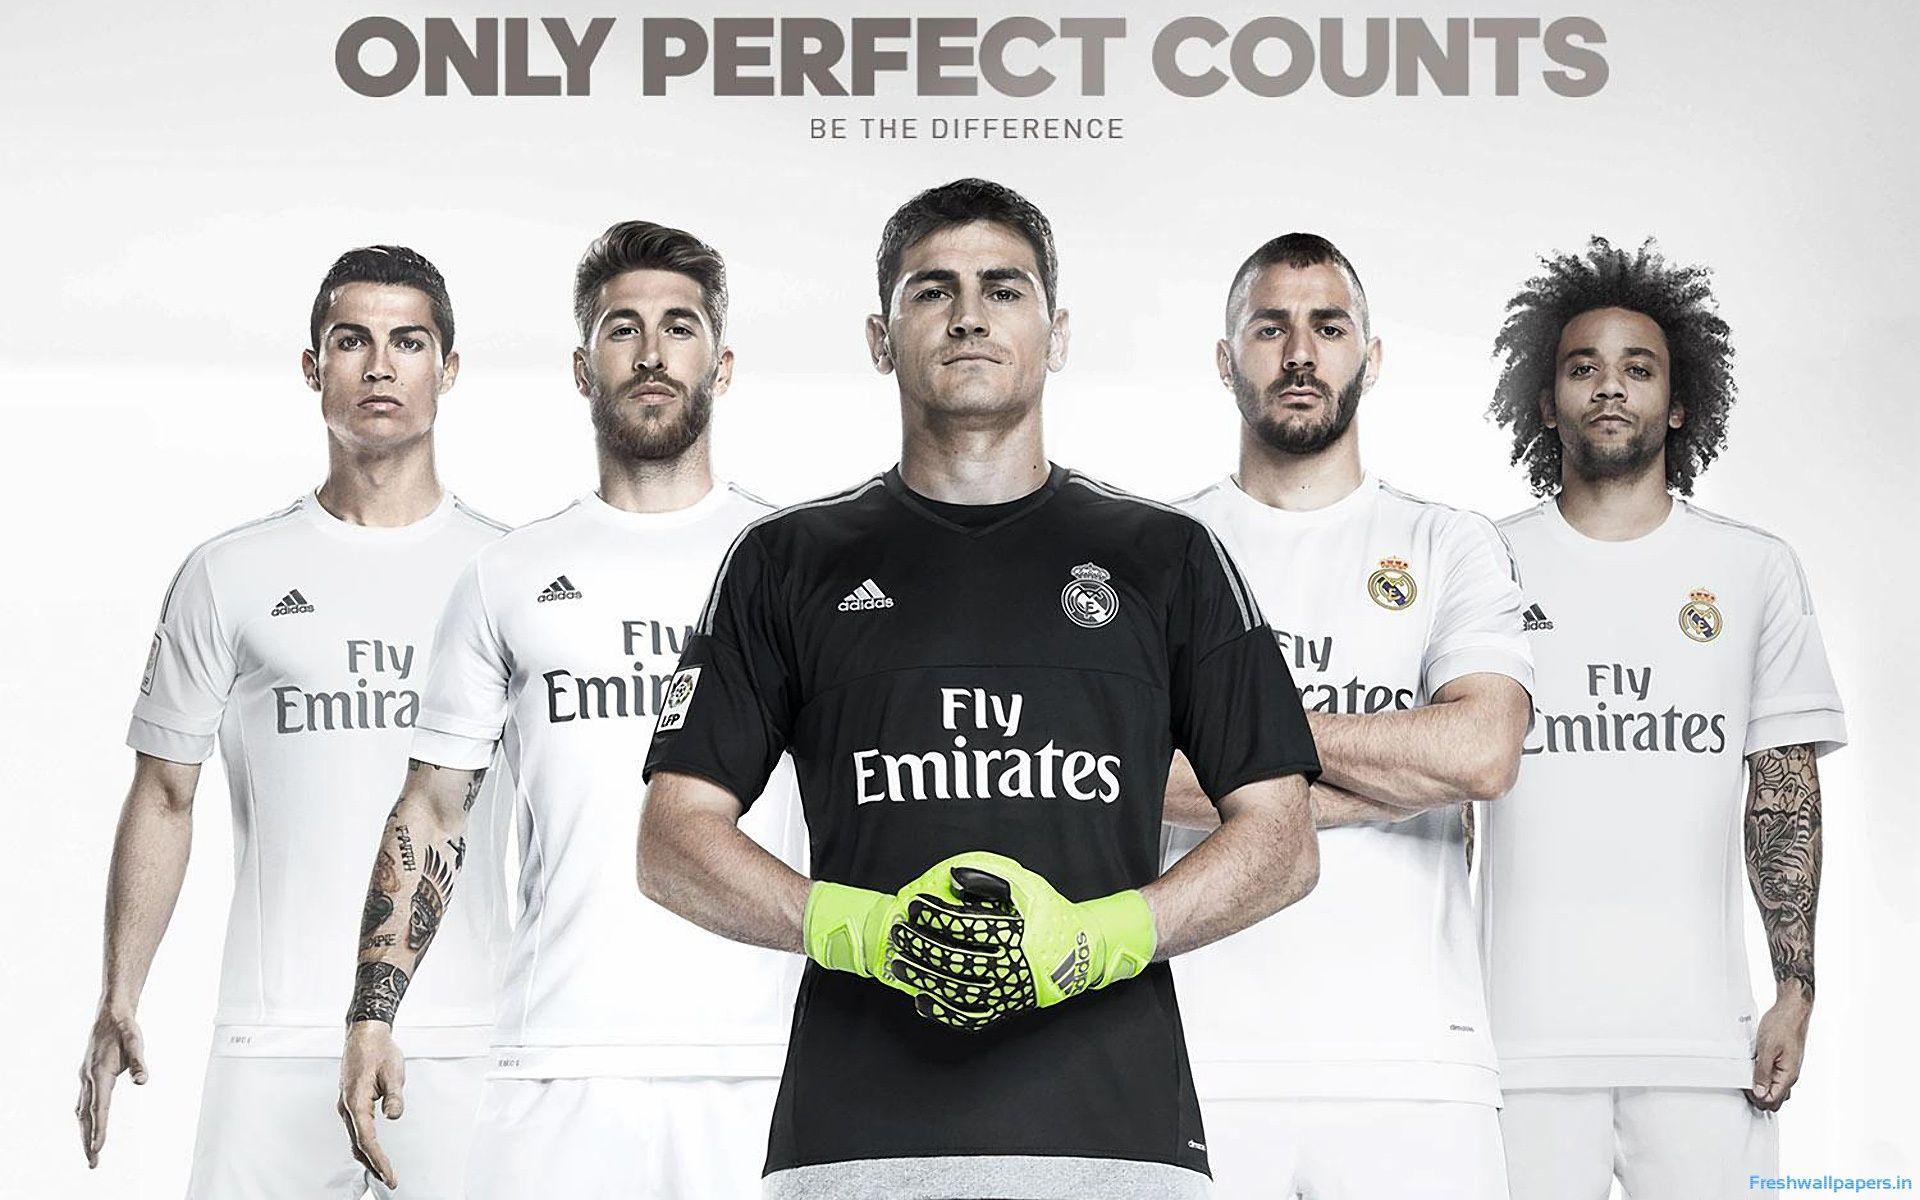 Real Madrid CF 2015 2016 Adidas Home Kit Wallpaper